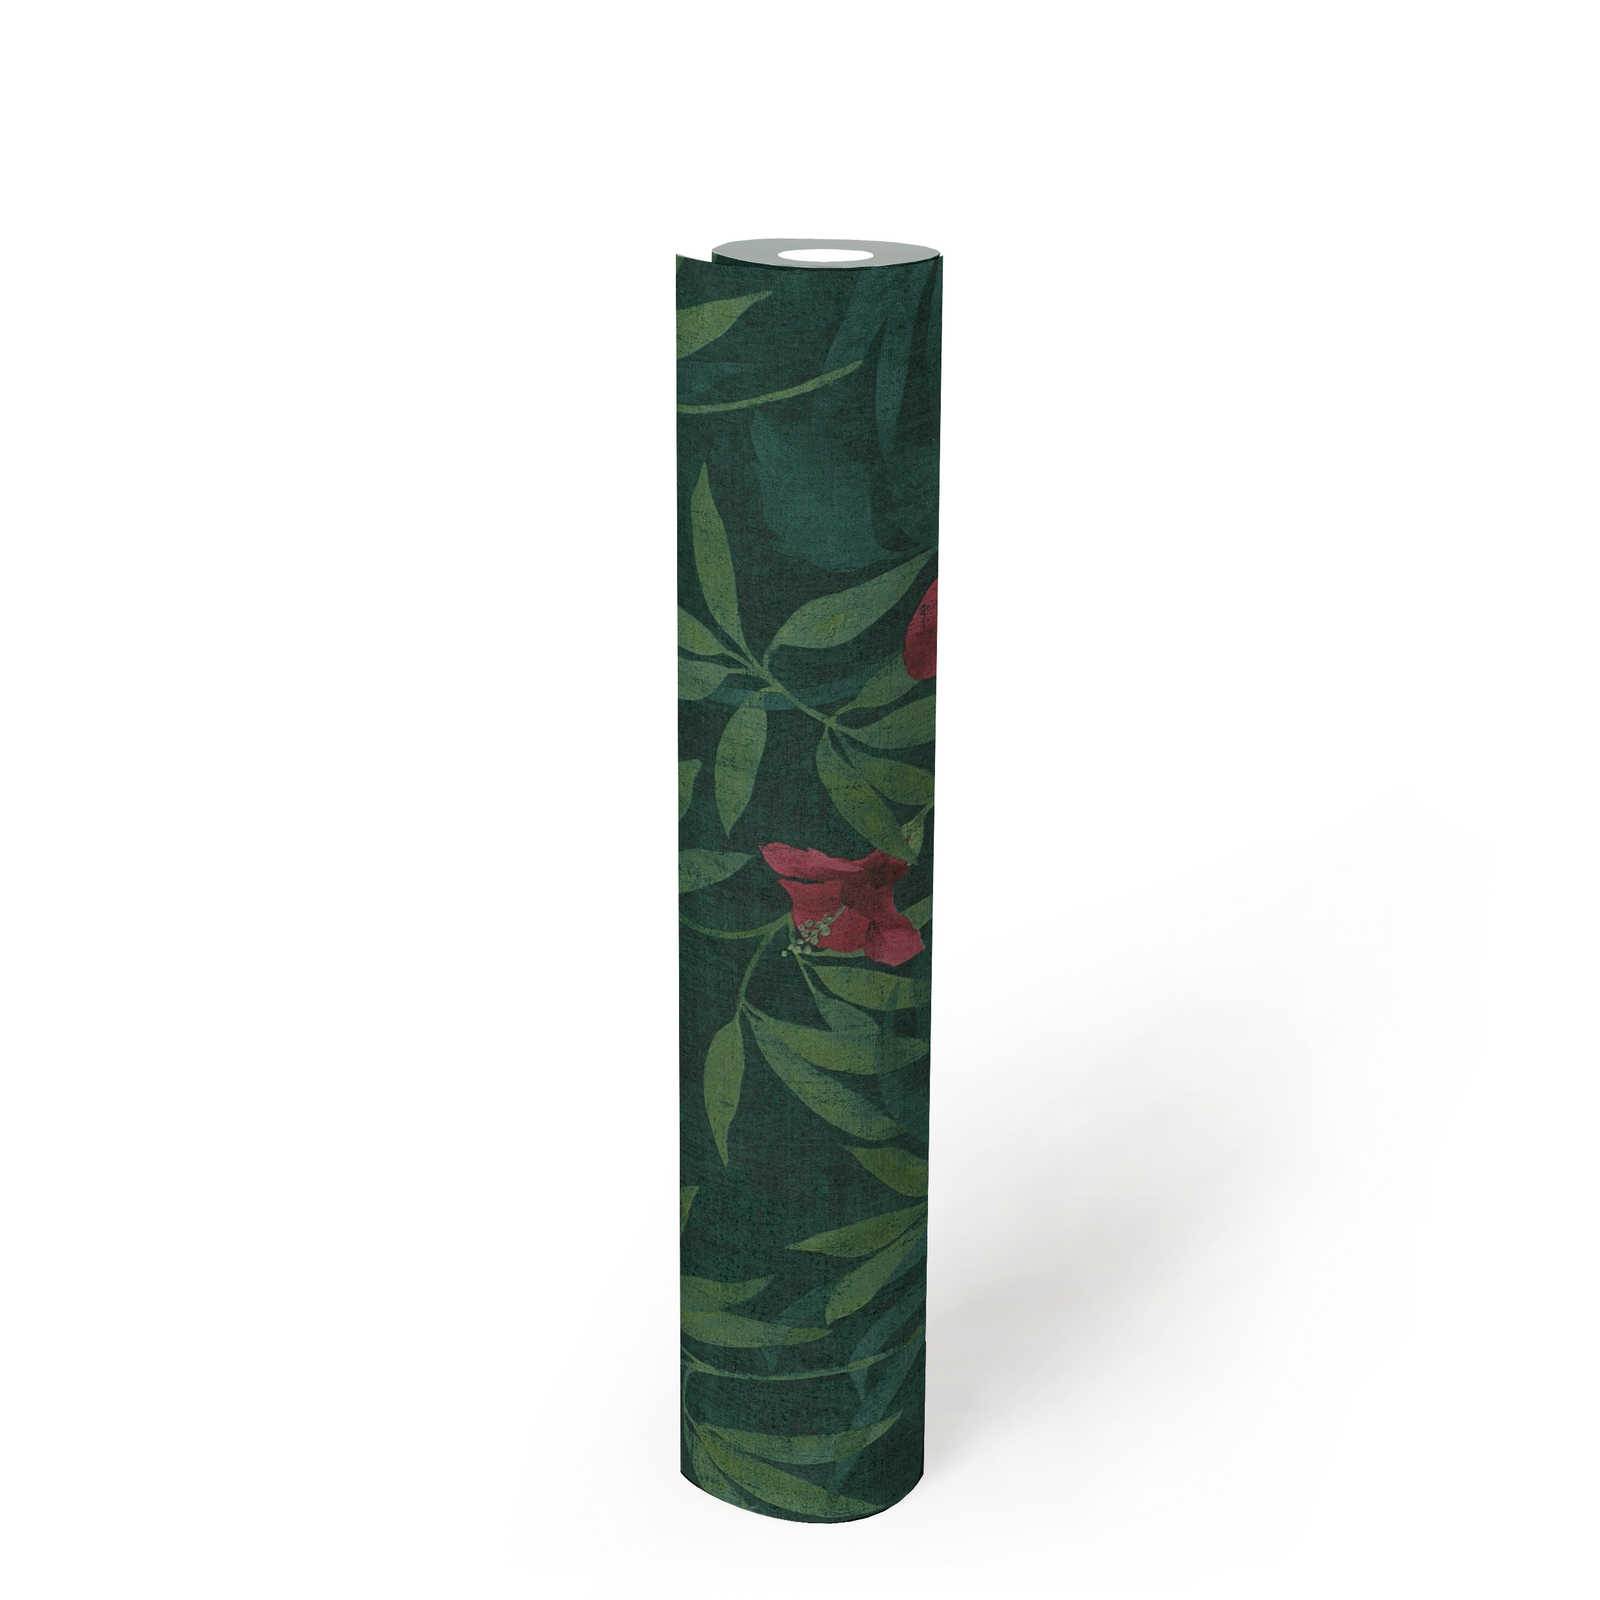             Jungle behang groene jungle & hibiscus bloemen - groen, rood
        